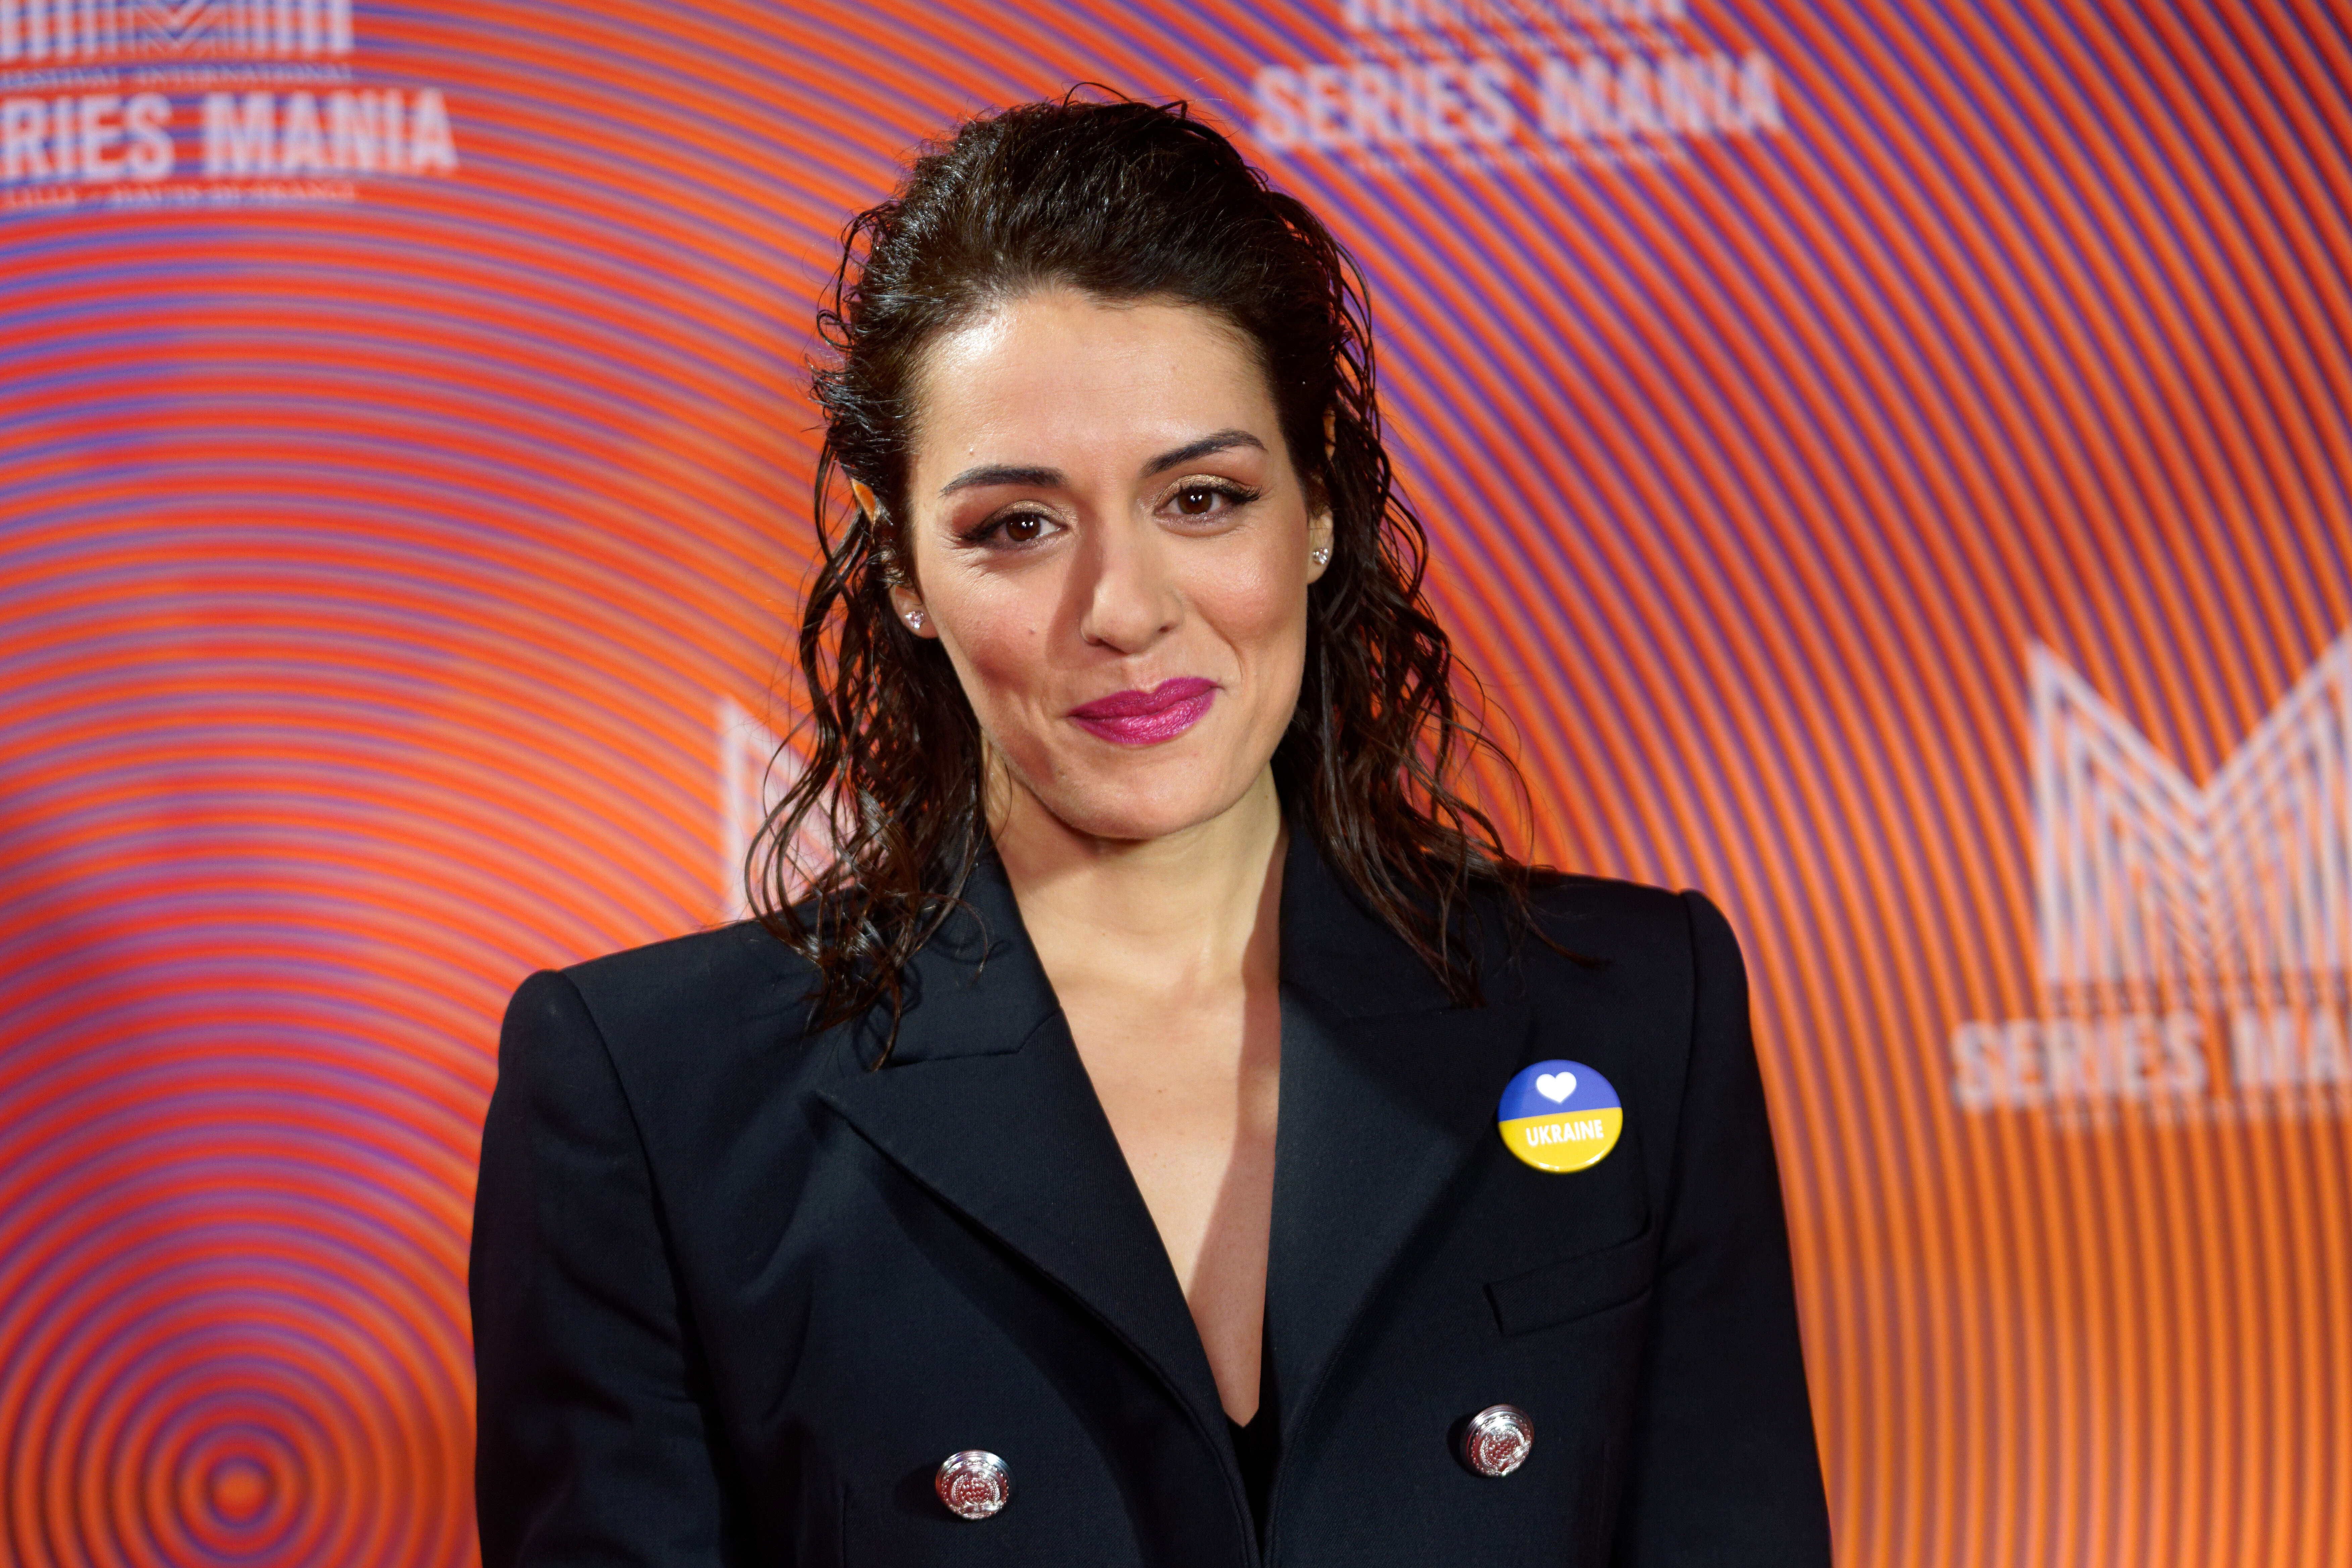 Sofia Essaïdi au Festival de Cannes, une reconversion réussie - Le HuffPost